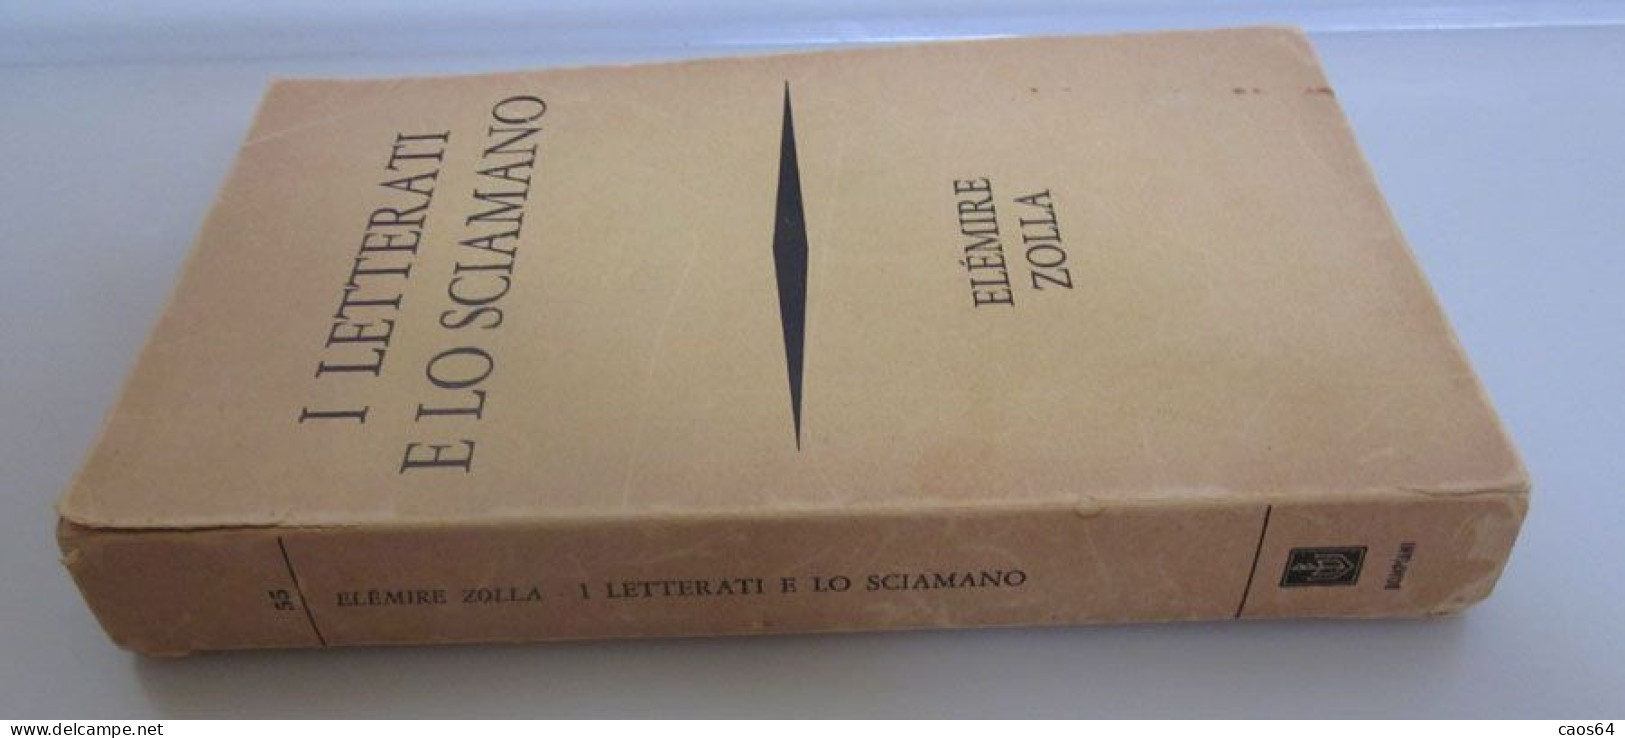 I Letterati E Lo Sciamano Elémire Zolla Bompiani 1969 - Religión